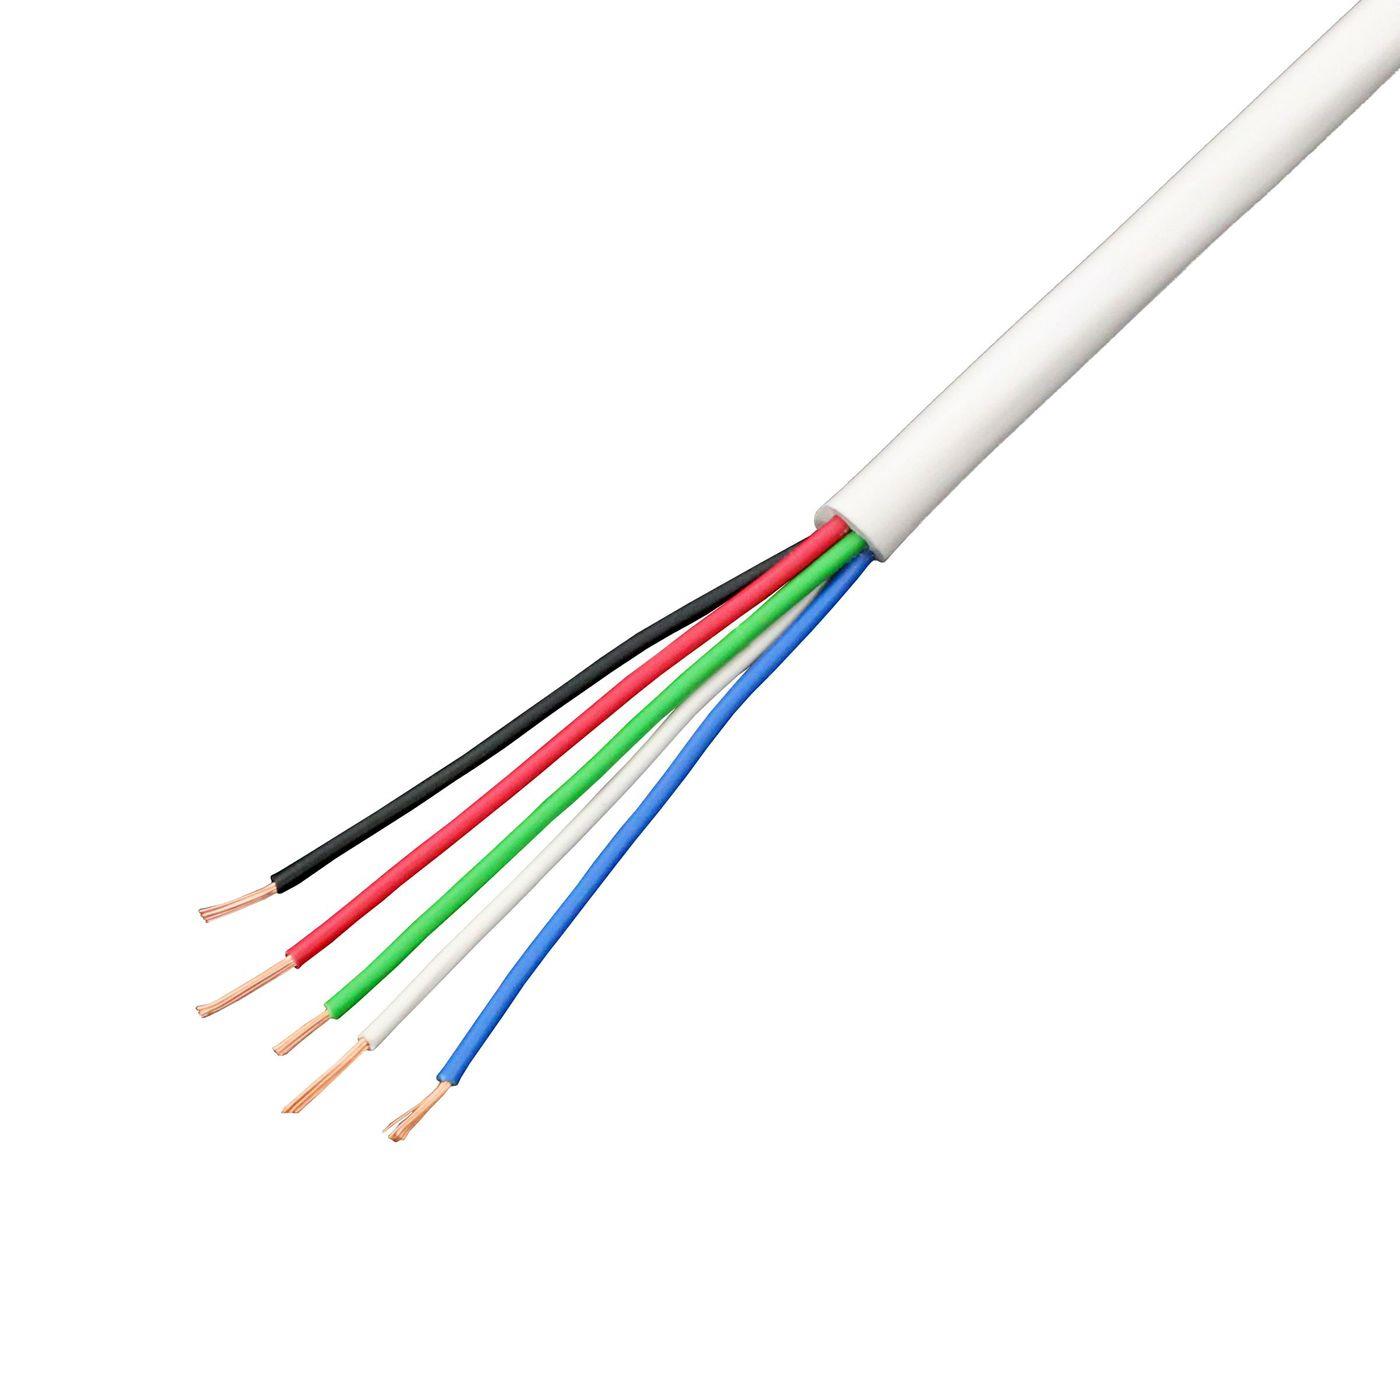 1m RGBW LED Steuerleitung 5x 0,34mm² LiYY Verlängerung 5 adrig Stromkabel Weiß